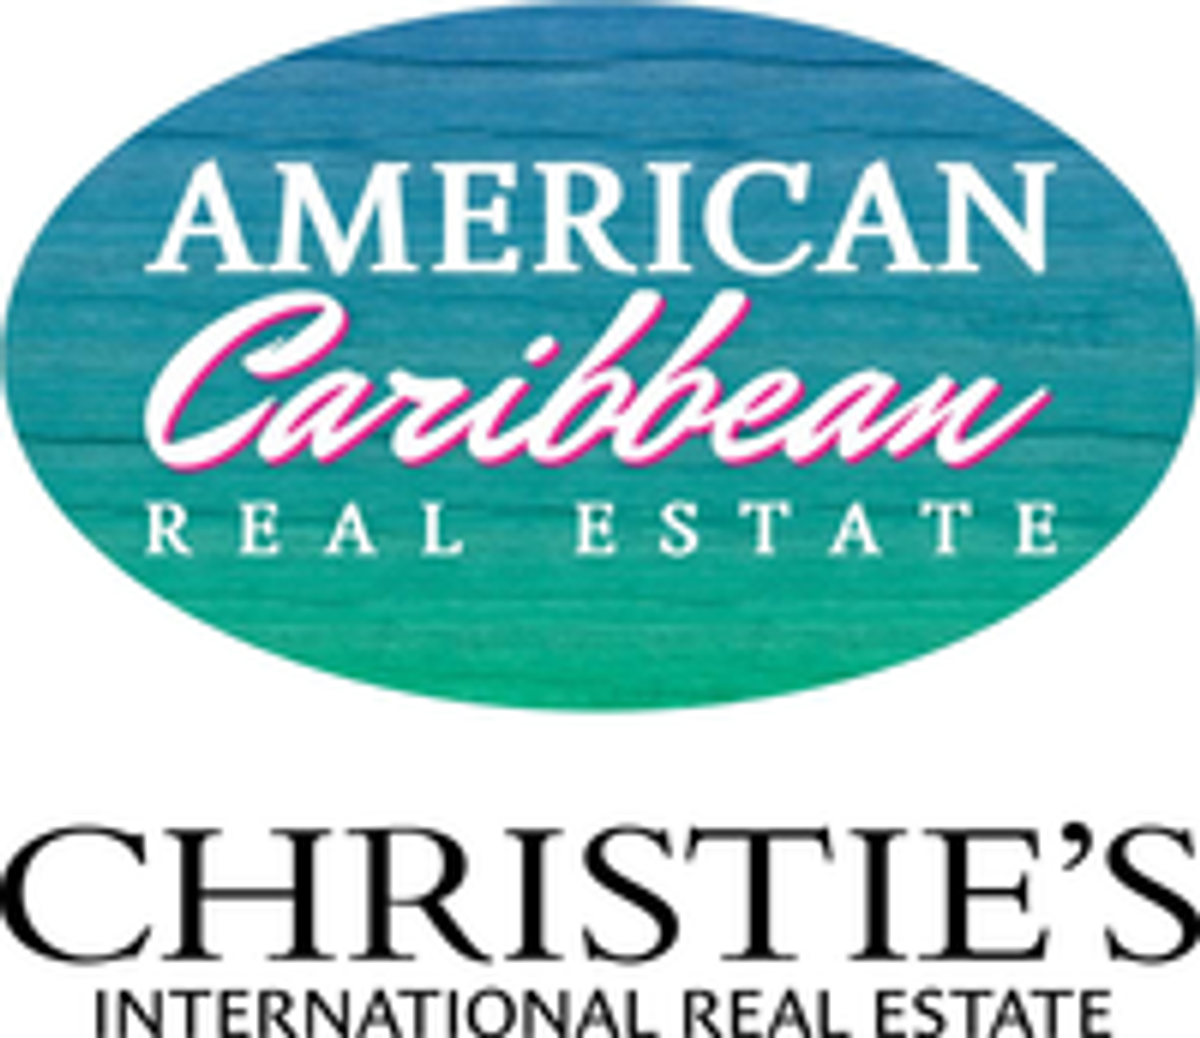 Photo for Karan Moeller, PA, Listing Agent at American Caribbean Real Estate - Islamorada